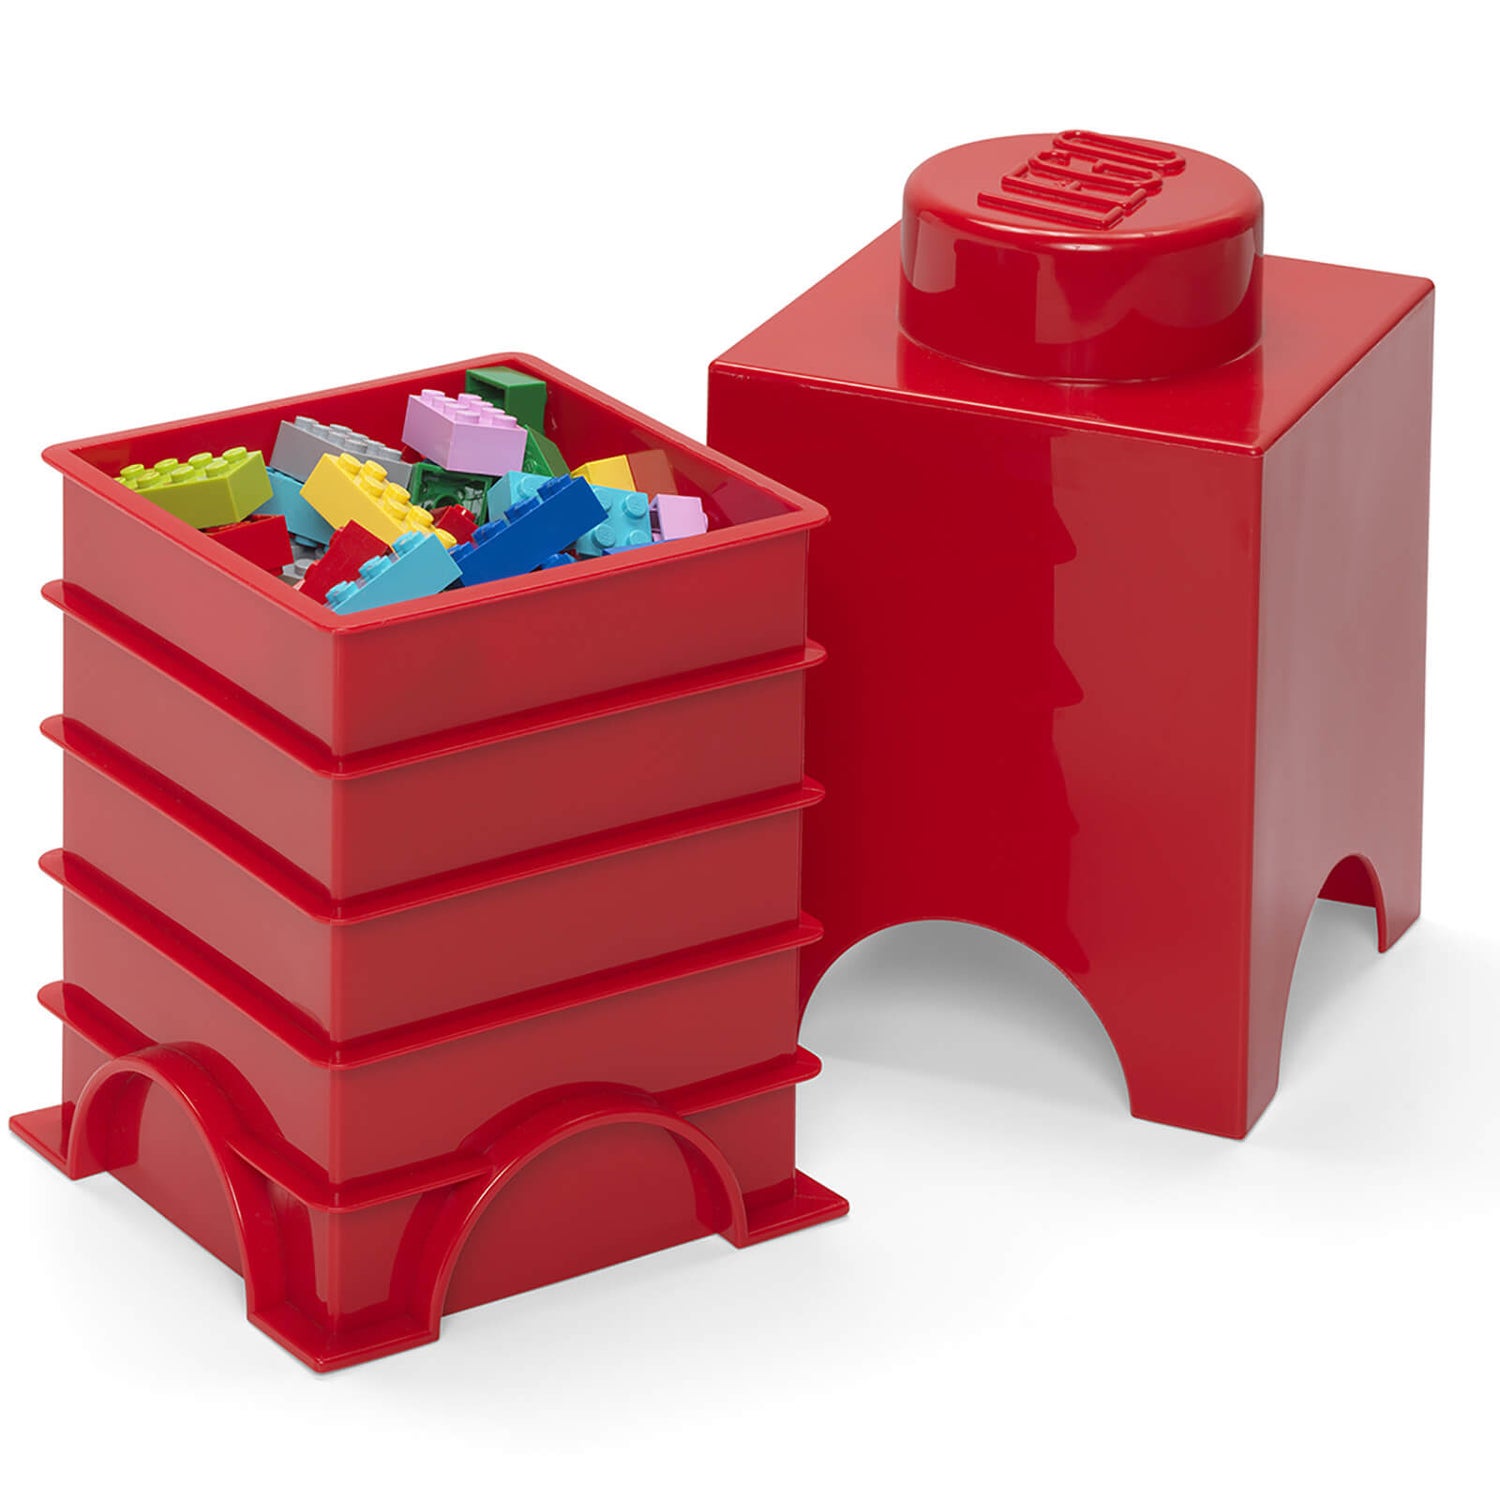 Lego 1 Stud Brick Container